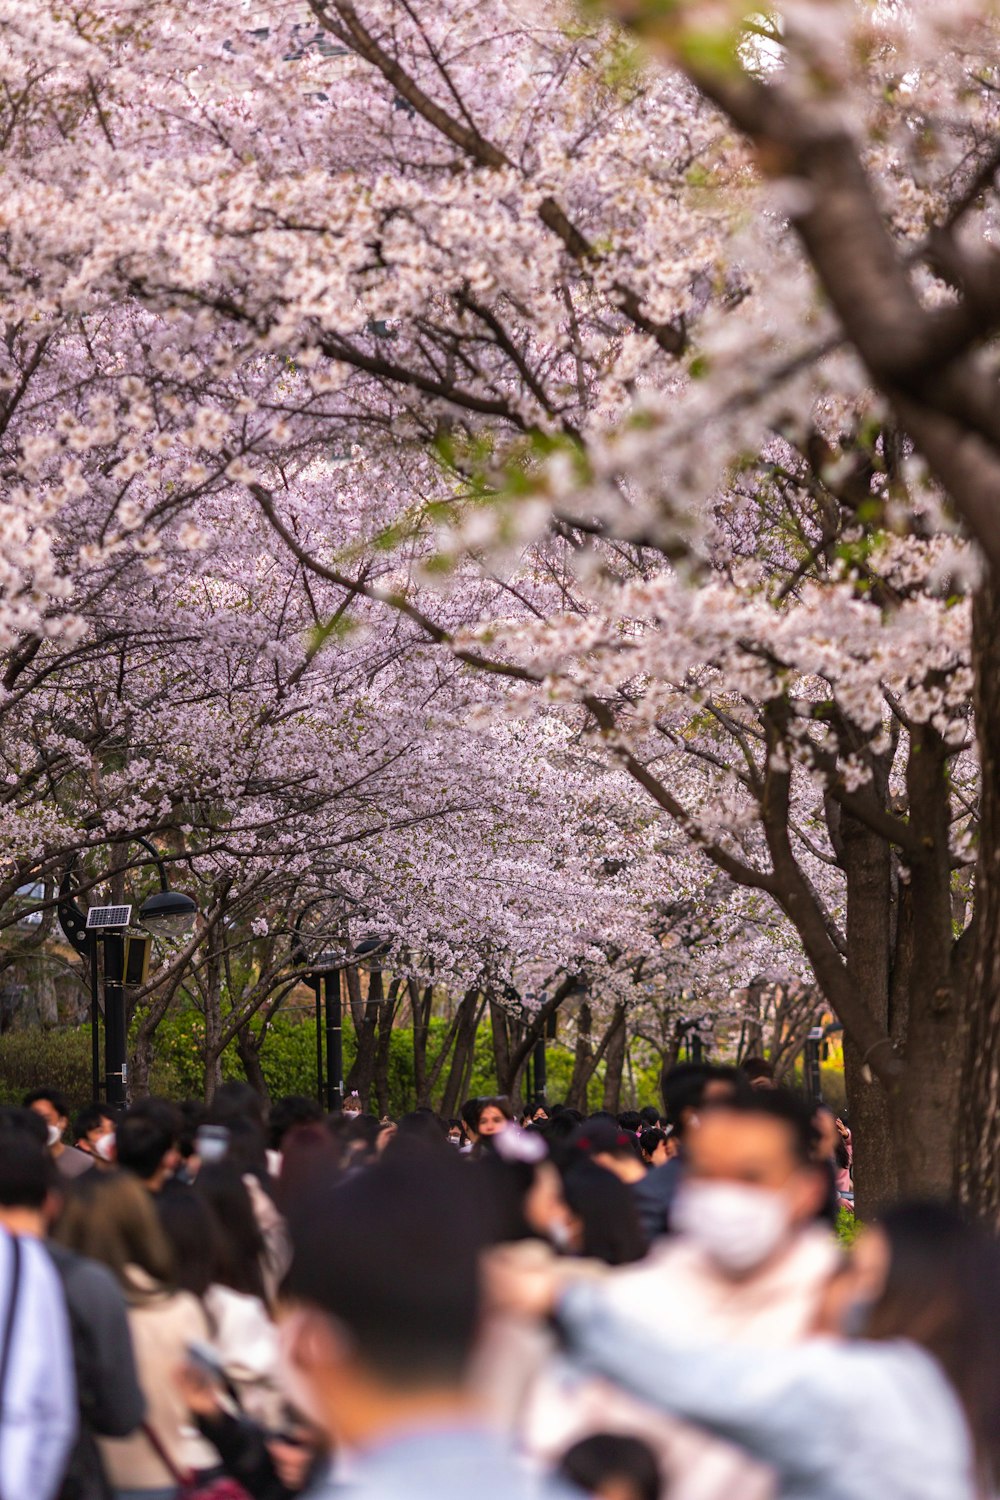 Un grupo de personas caminando bajo los cerezos en flor